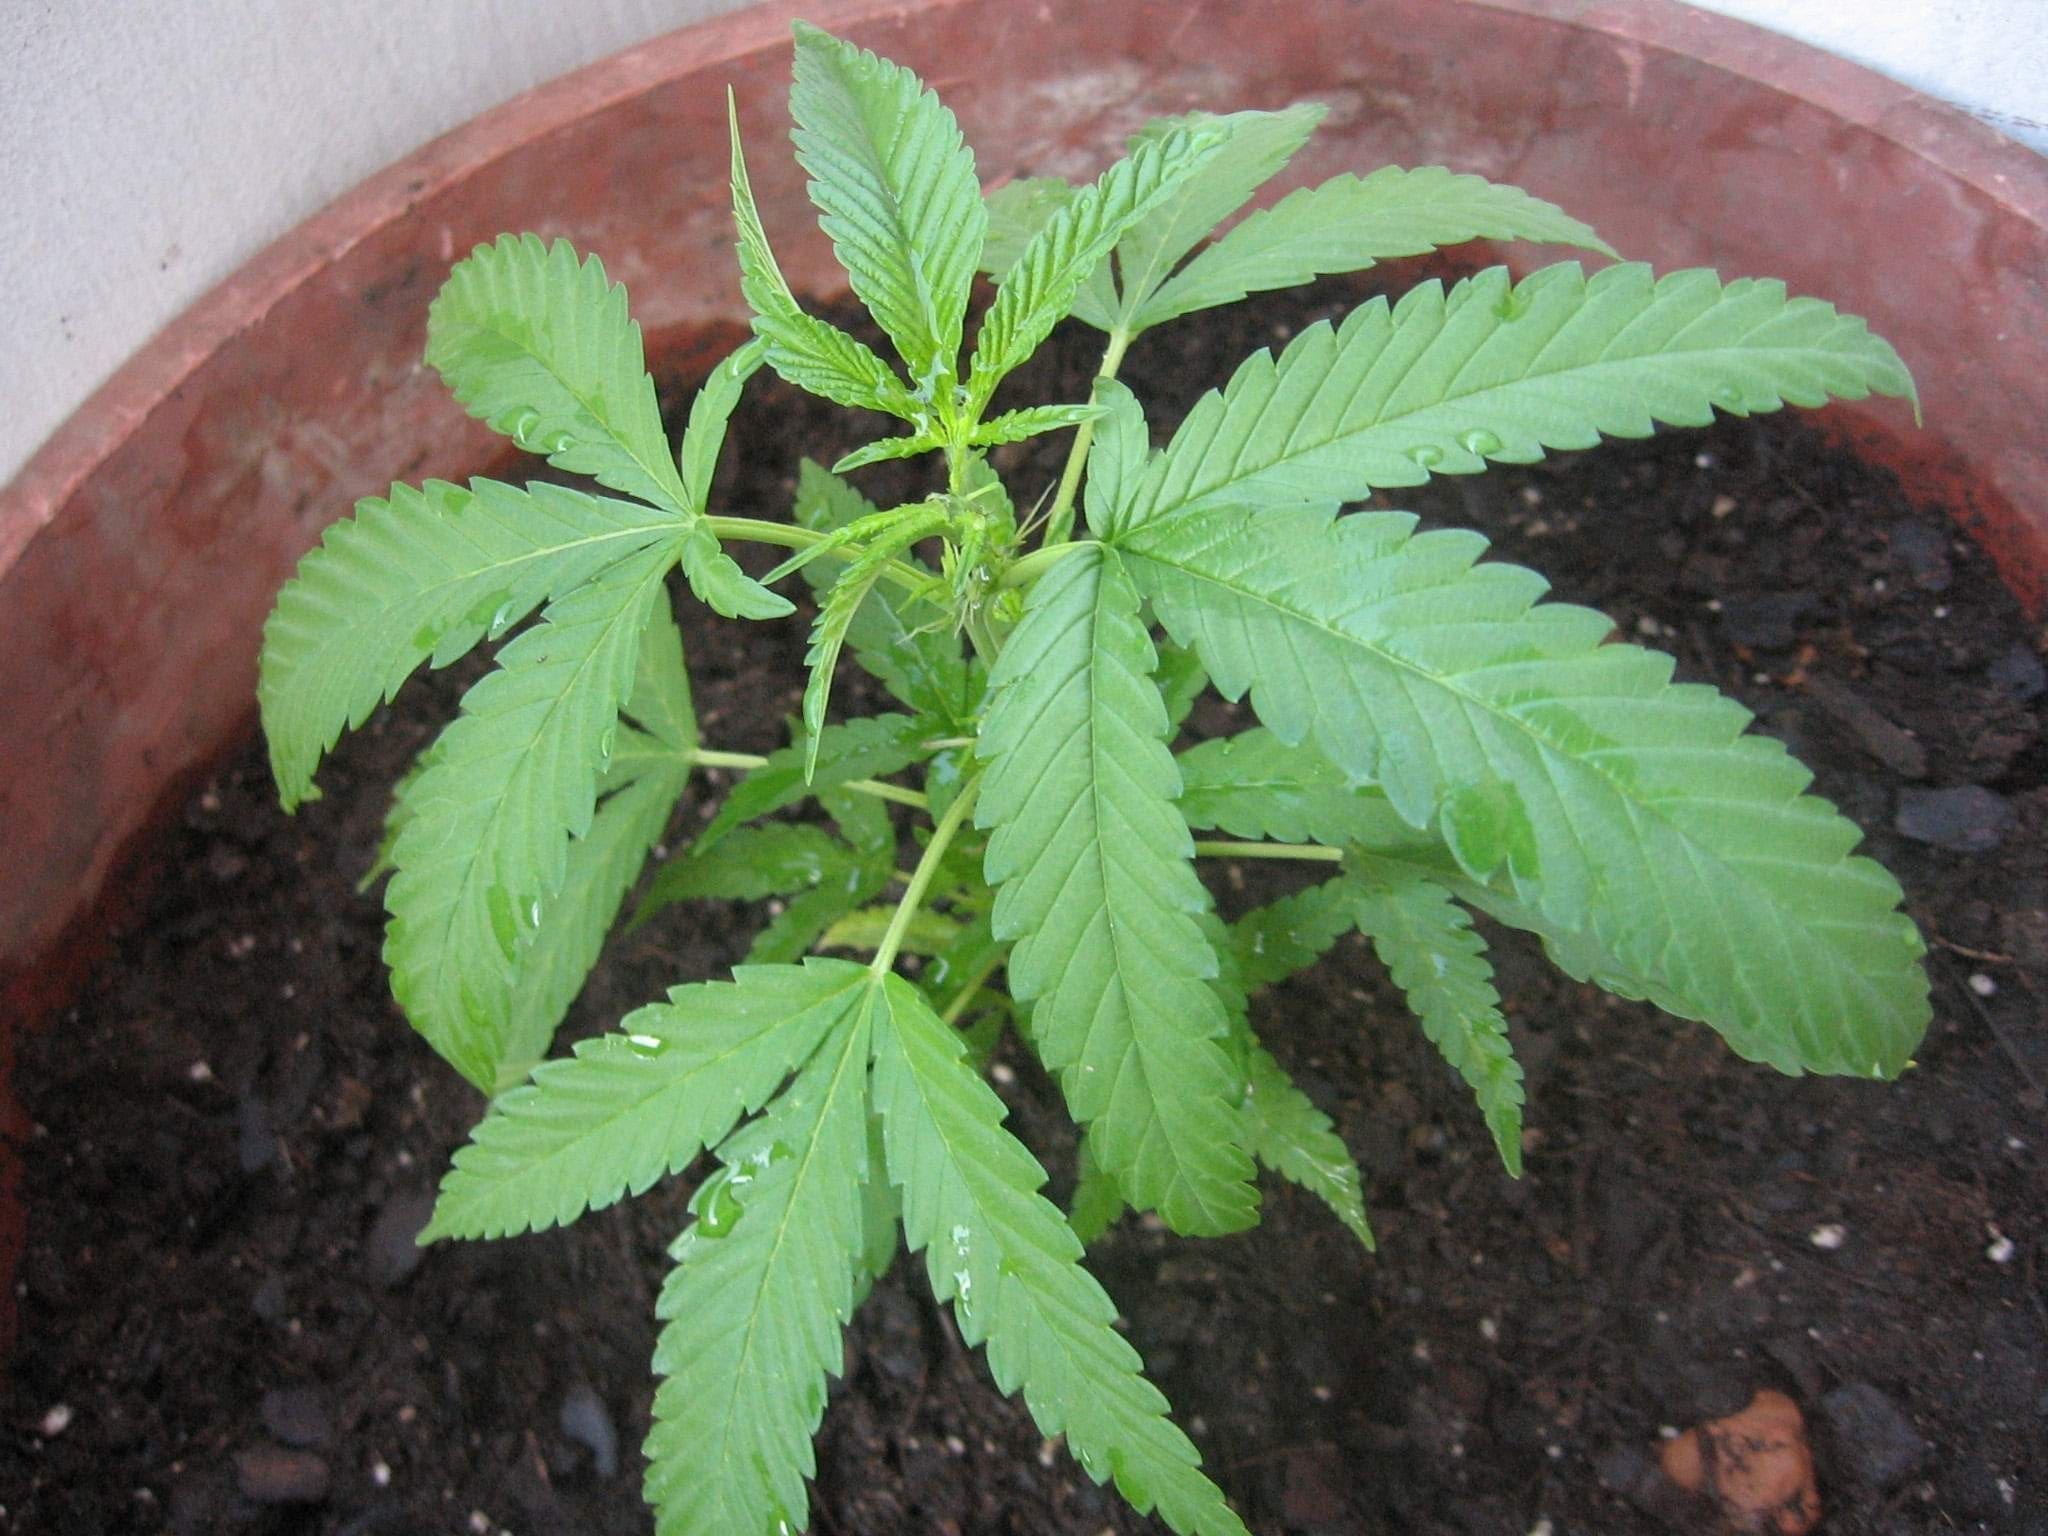 Cannabis in vegetative stage - week 3